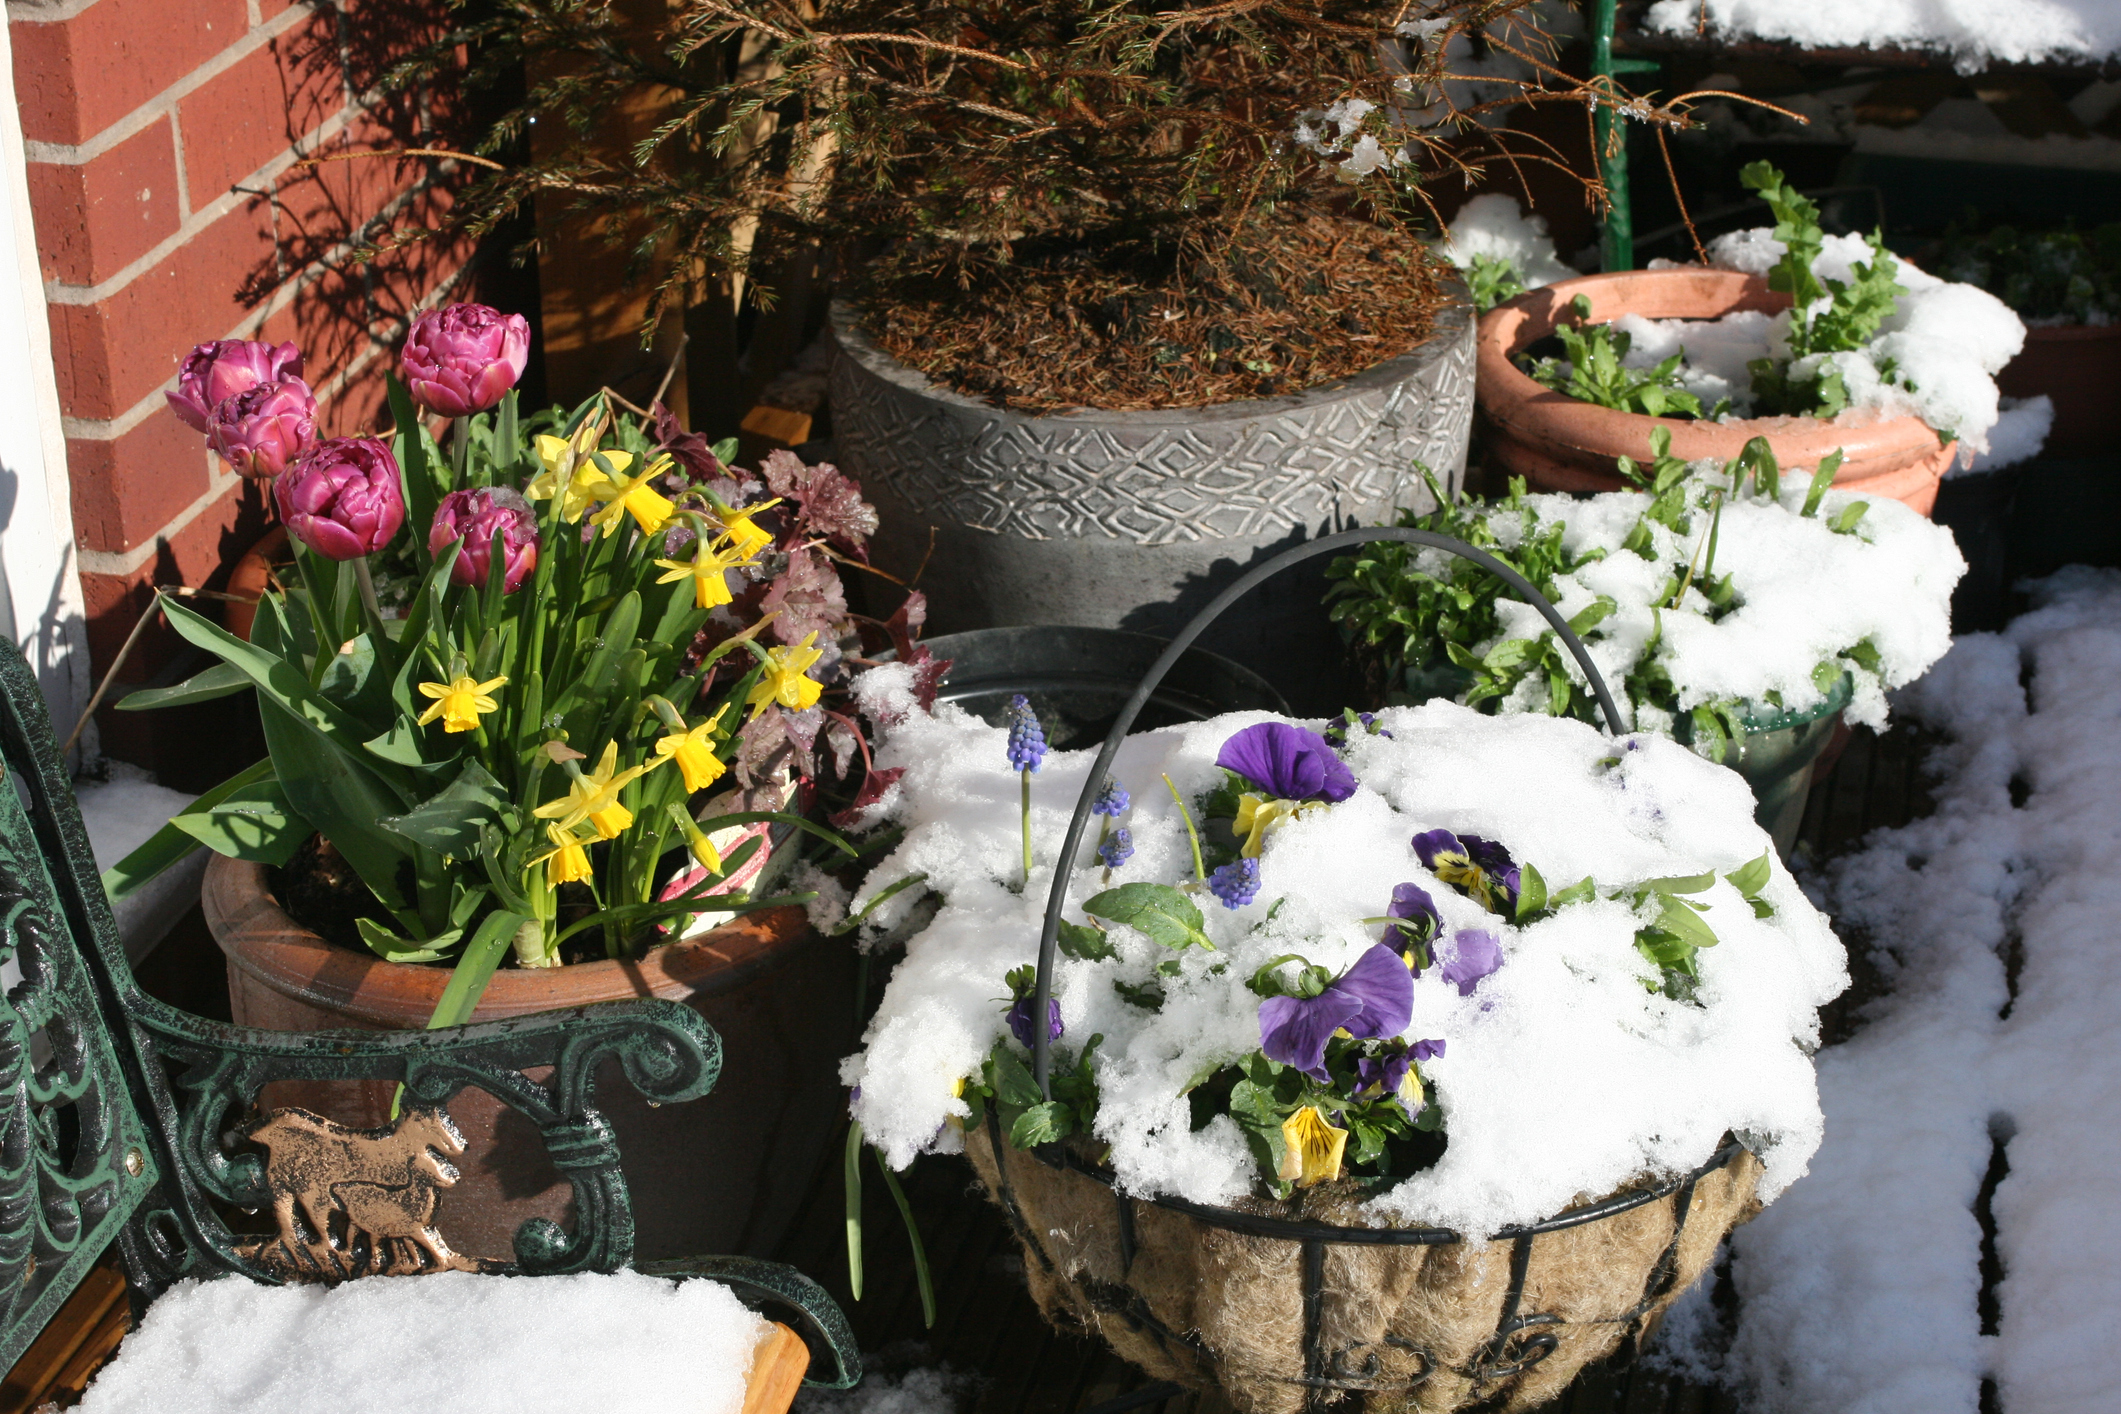 Πώς να προστατεύσεις τα φυτά σου από το κρύο, το χιόνι και τον παγετό